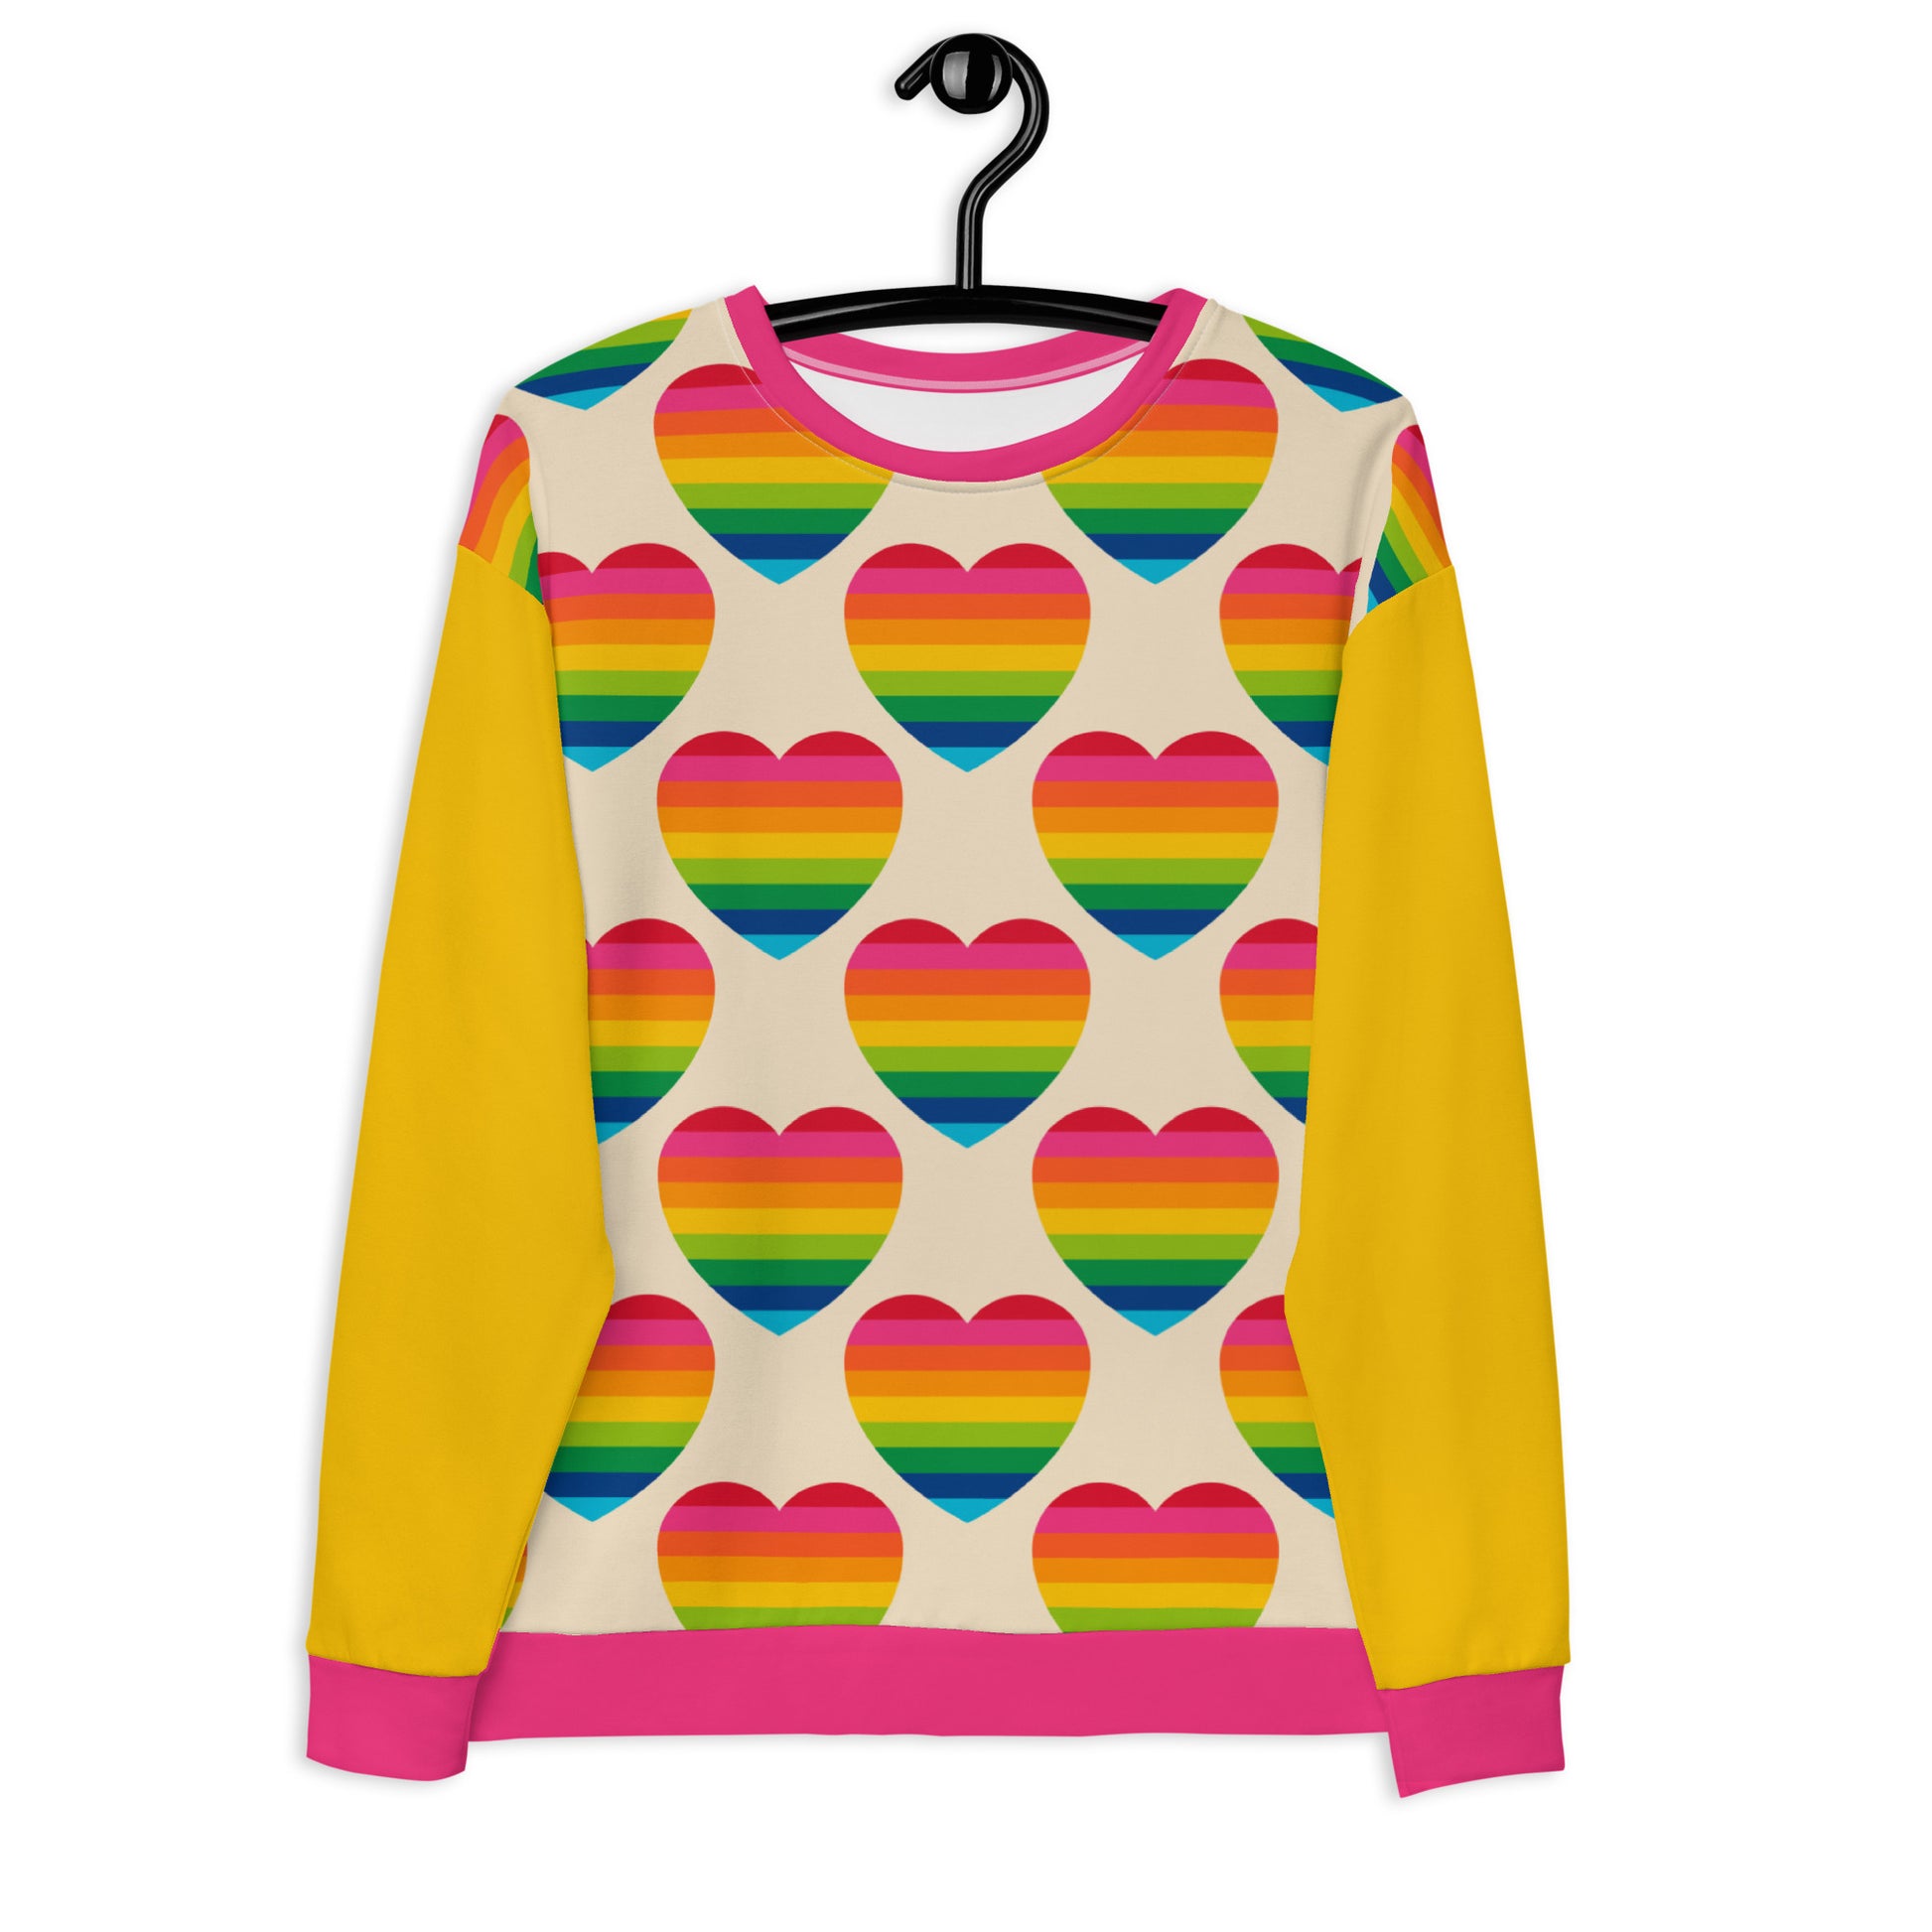 ELLIE LOVE rainbow - Unisex Sweatshirt